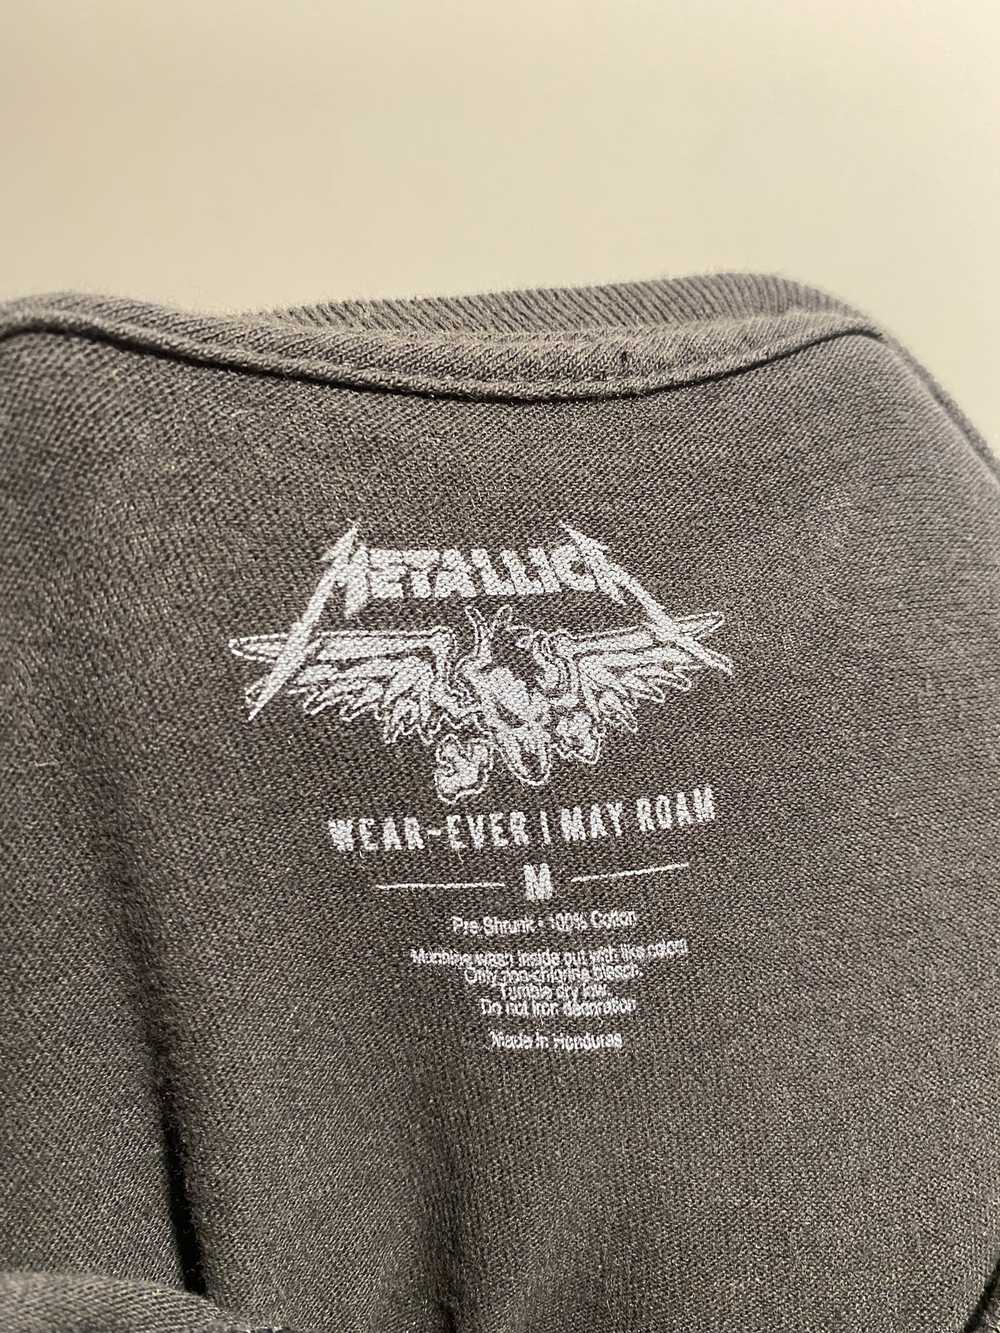 Metallica Metallica Hardwired Tour T Shirt (M) - image 3